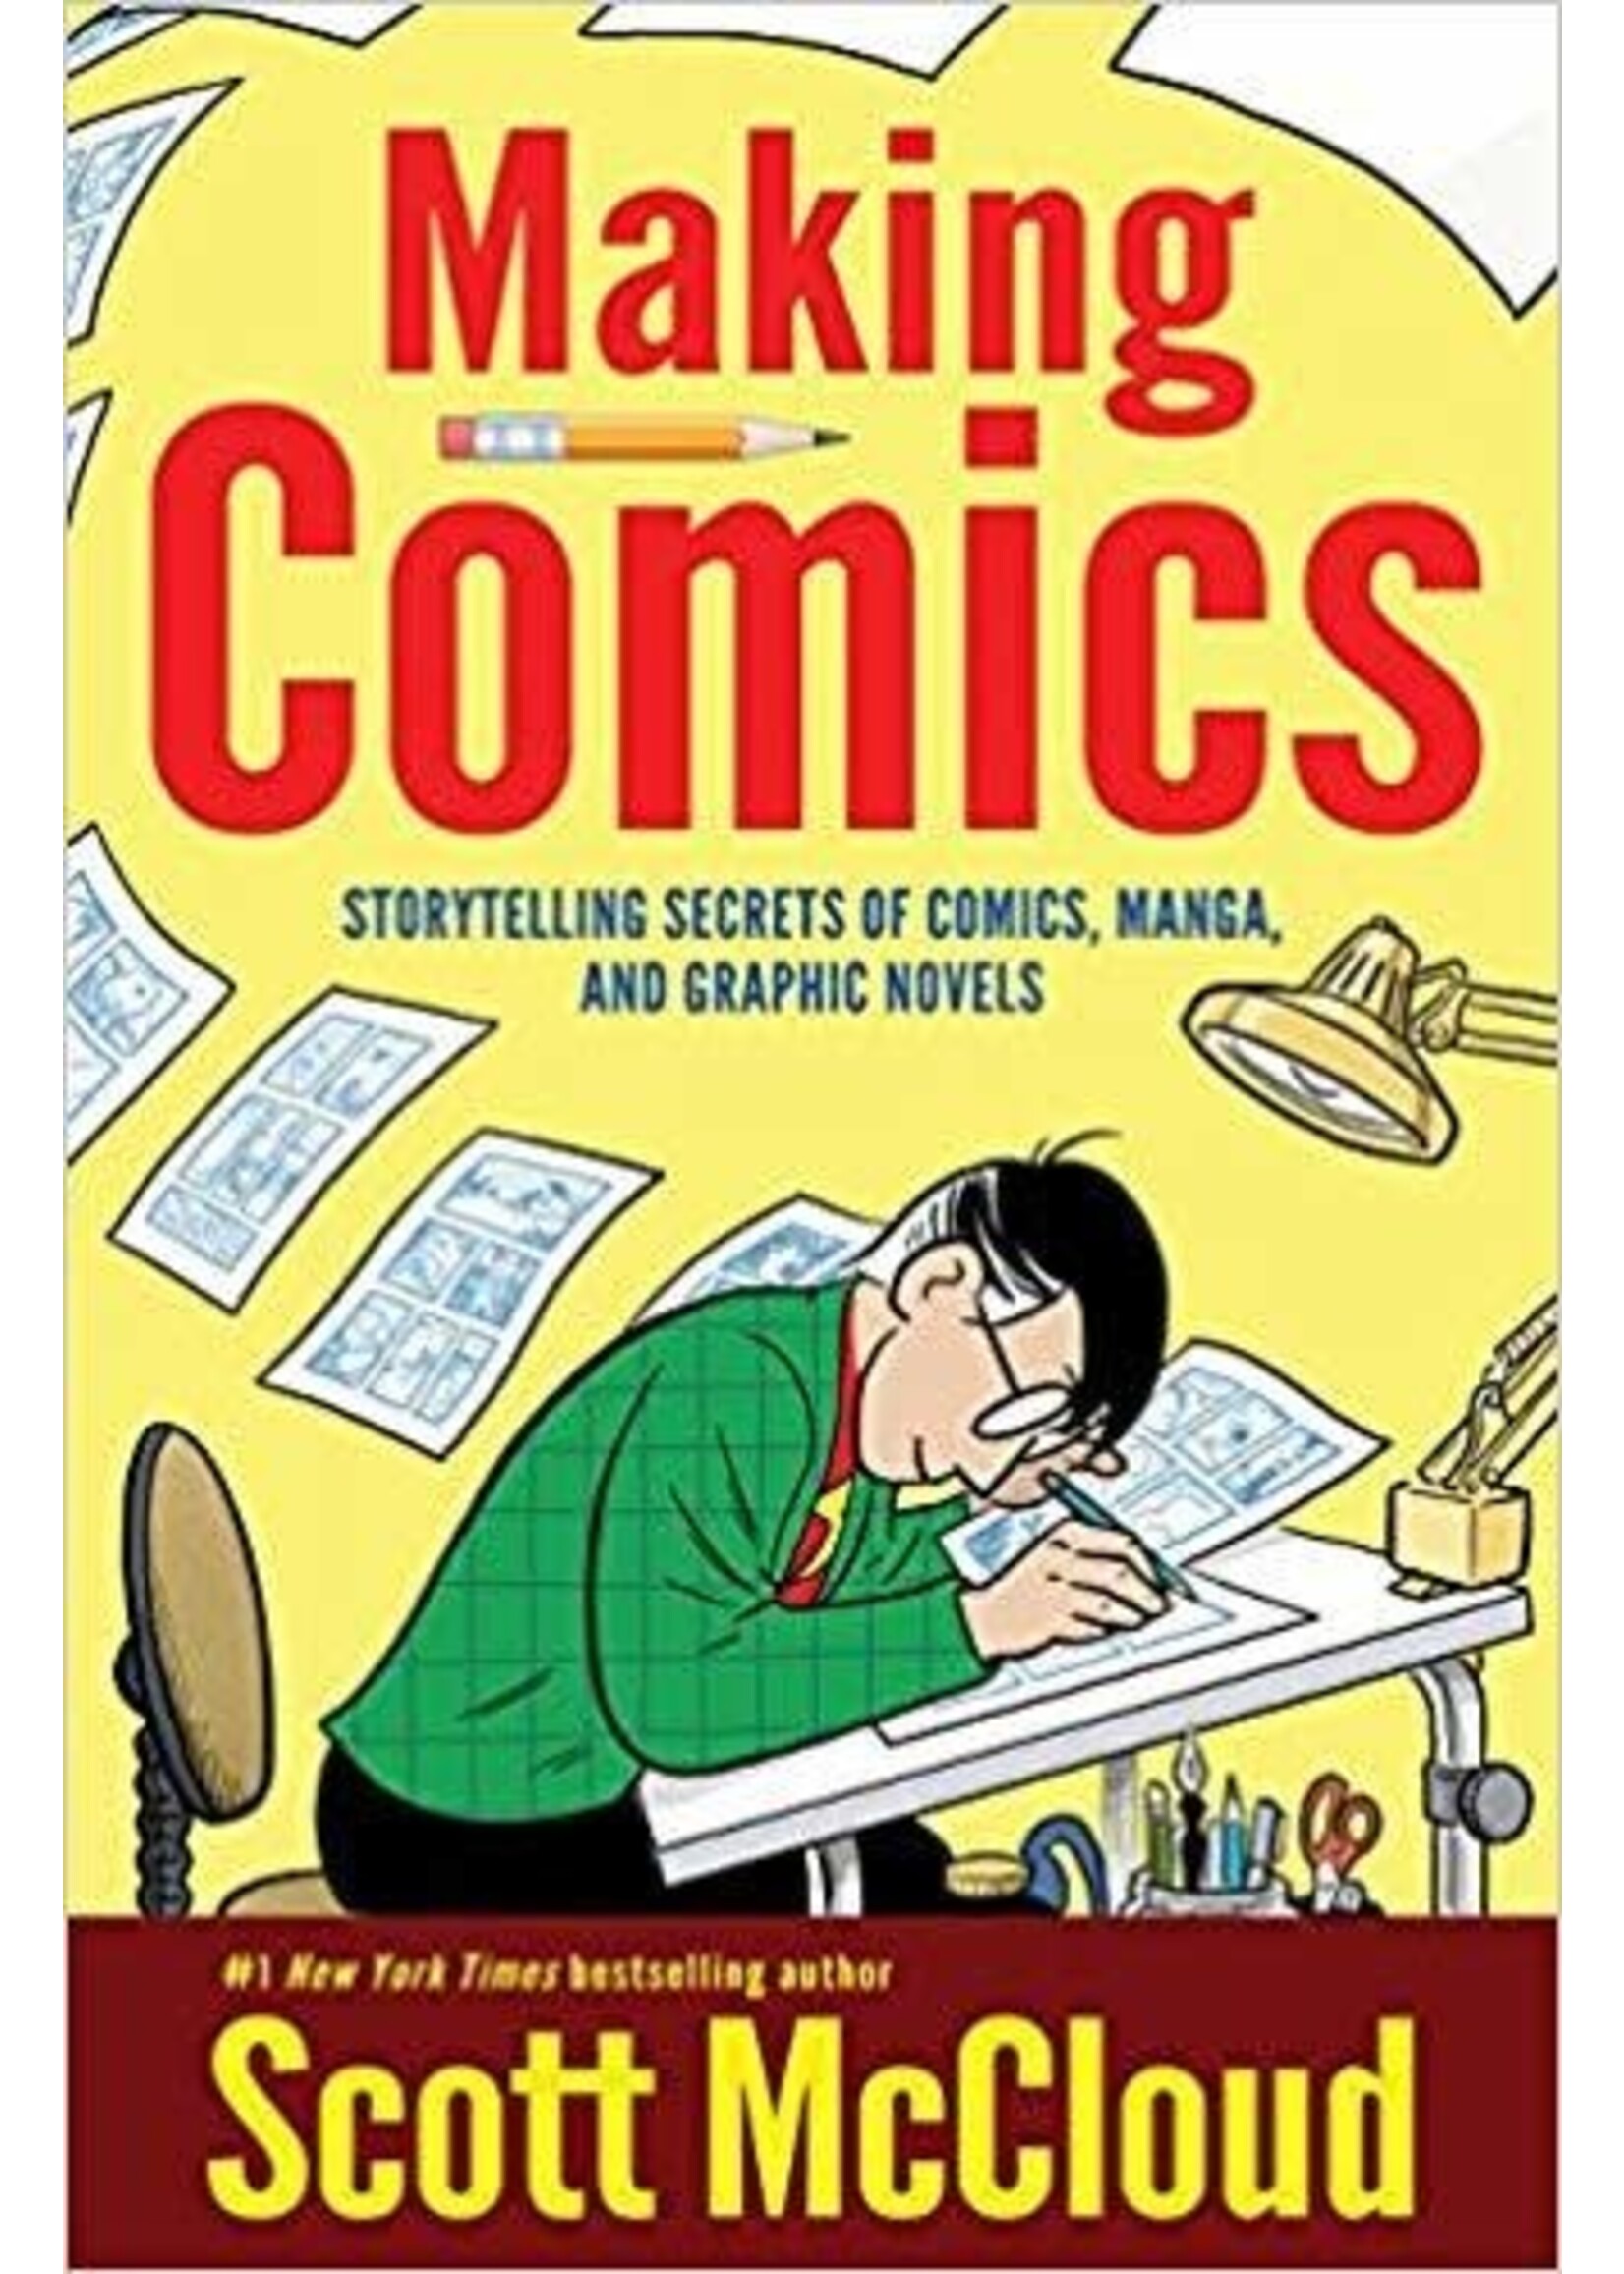 Making Comics: Storytelling Secrets of Comics, Manga and Graphic Novels (The Comic Books #3) by Scott McCloud